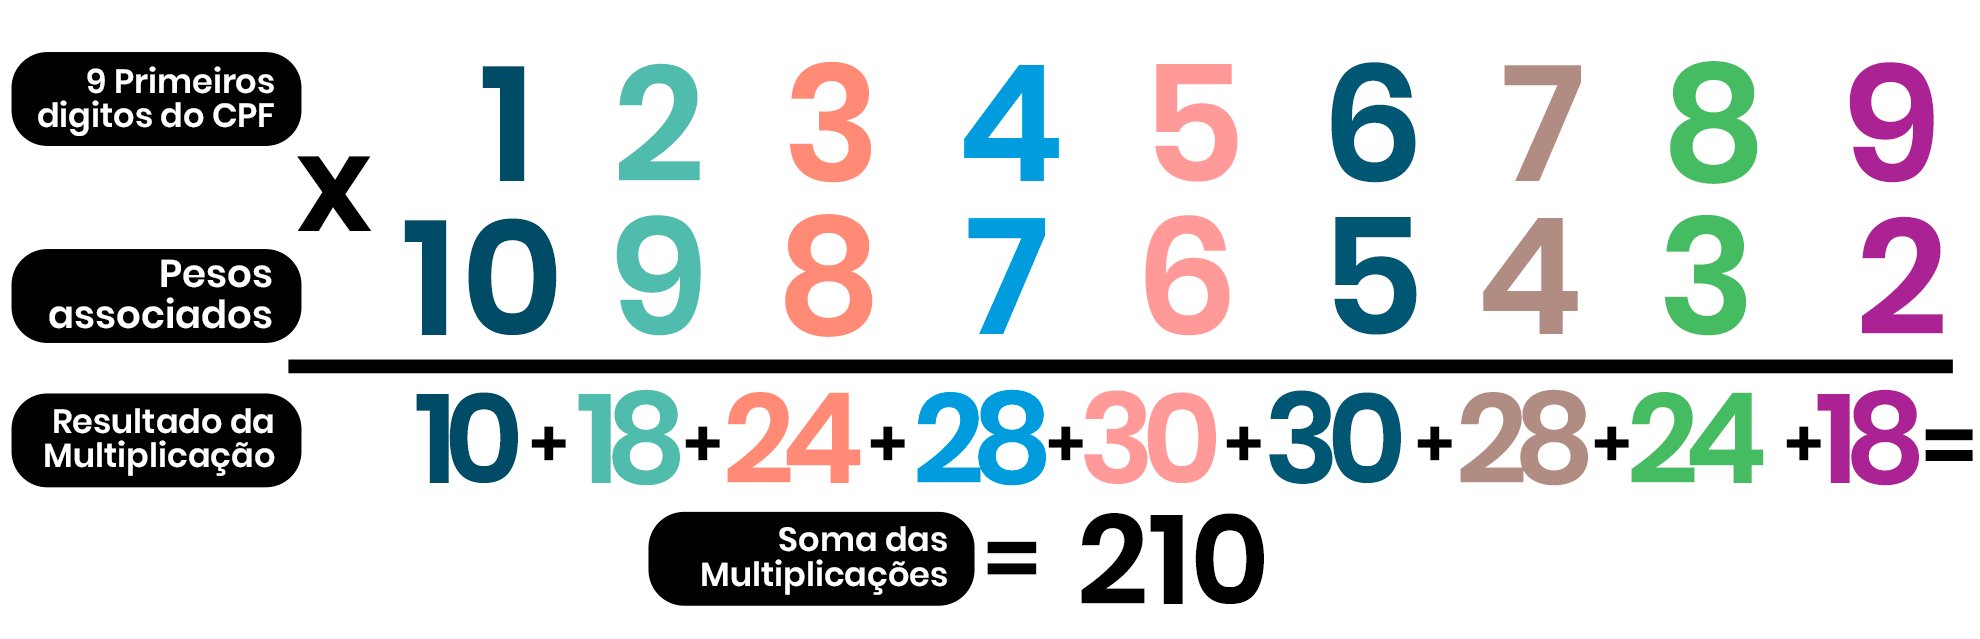 Imagem ilustra a multiplicação dos 9 primeiros dígitos do CPF (123456789) e seus respectivos pesos (10,9,8,7,6,5,4,3,2); além disso, mostra os resultados de cada multiplicação (10,18,24,28,30,30,28,24,18), sendo que os resultados das multiplicações foram somados para obter o número 210.